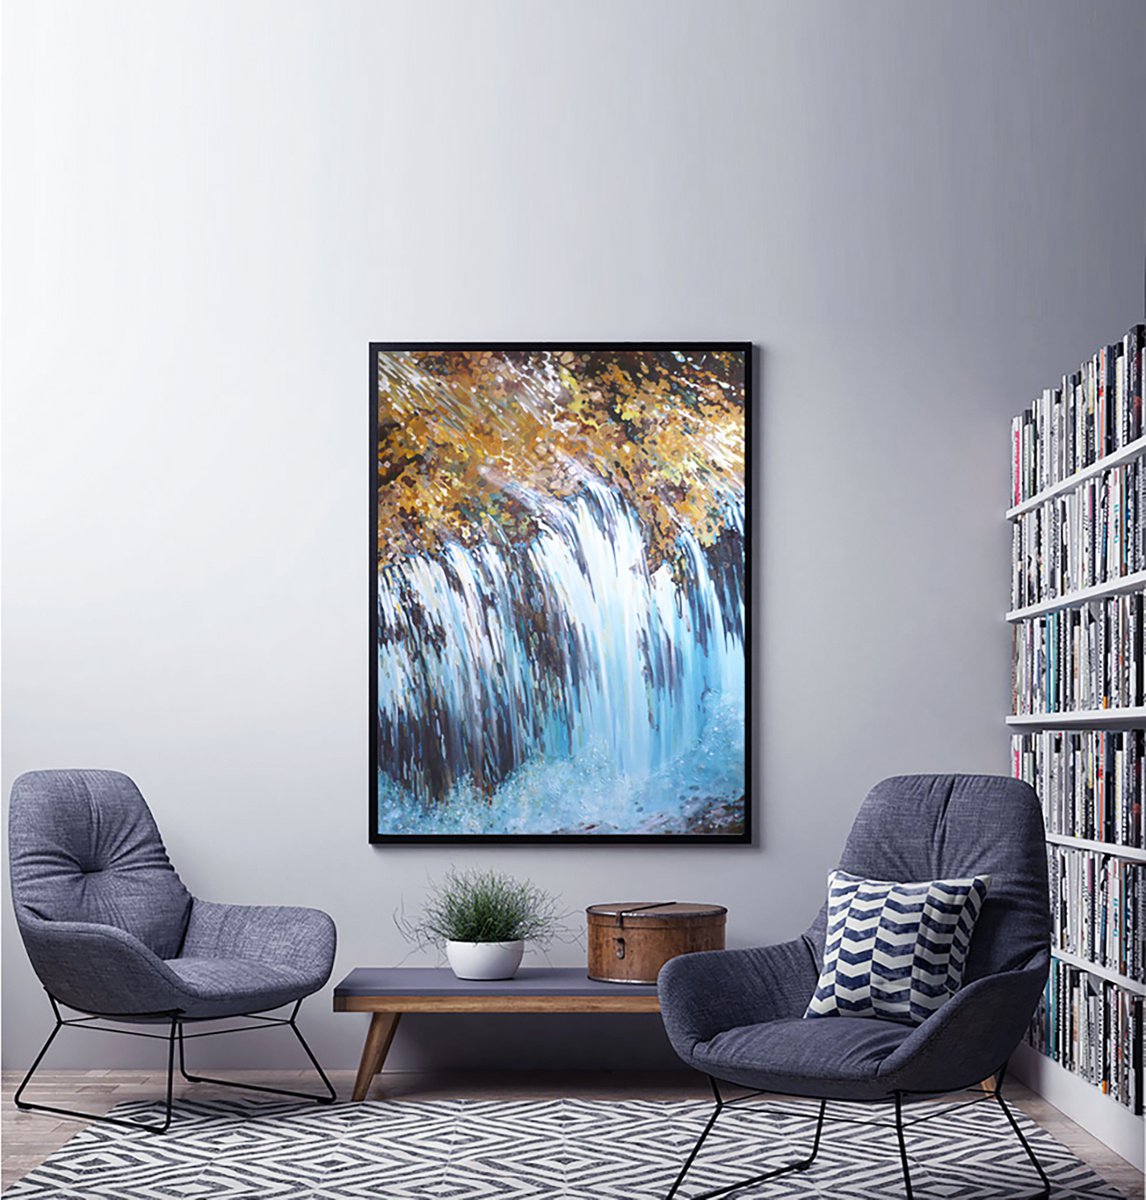 Biltmore Kingdom River Waterfall 36 x 48 Framed by Juul by Margaret Juul